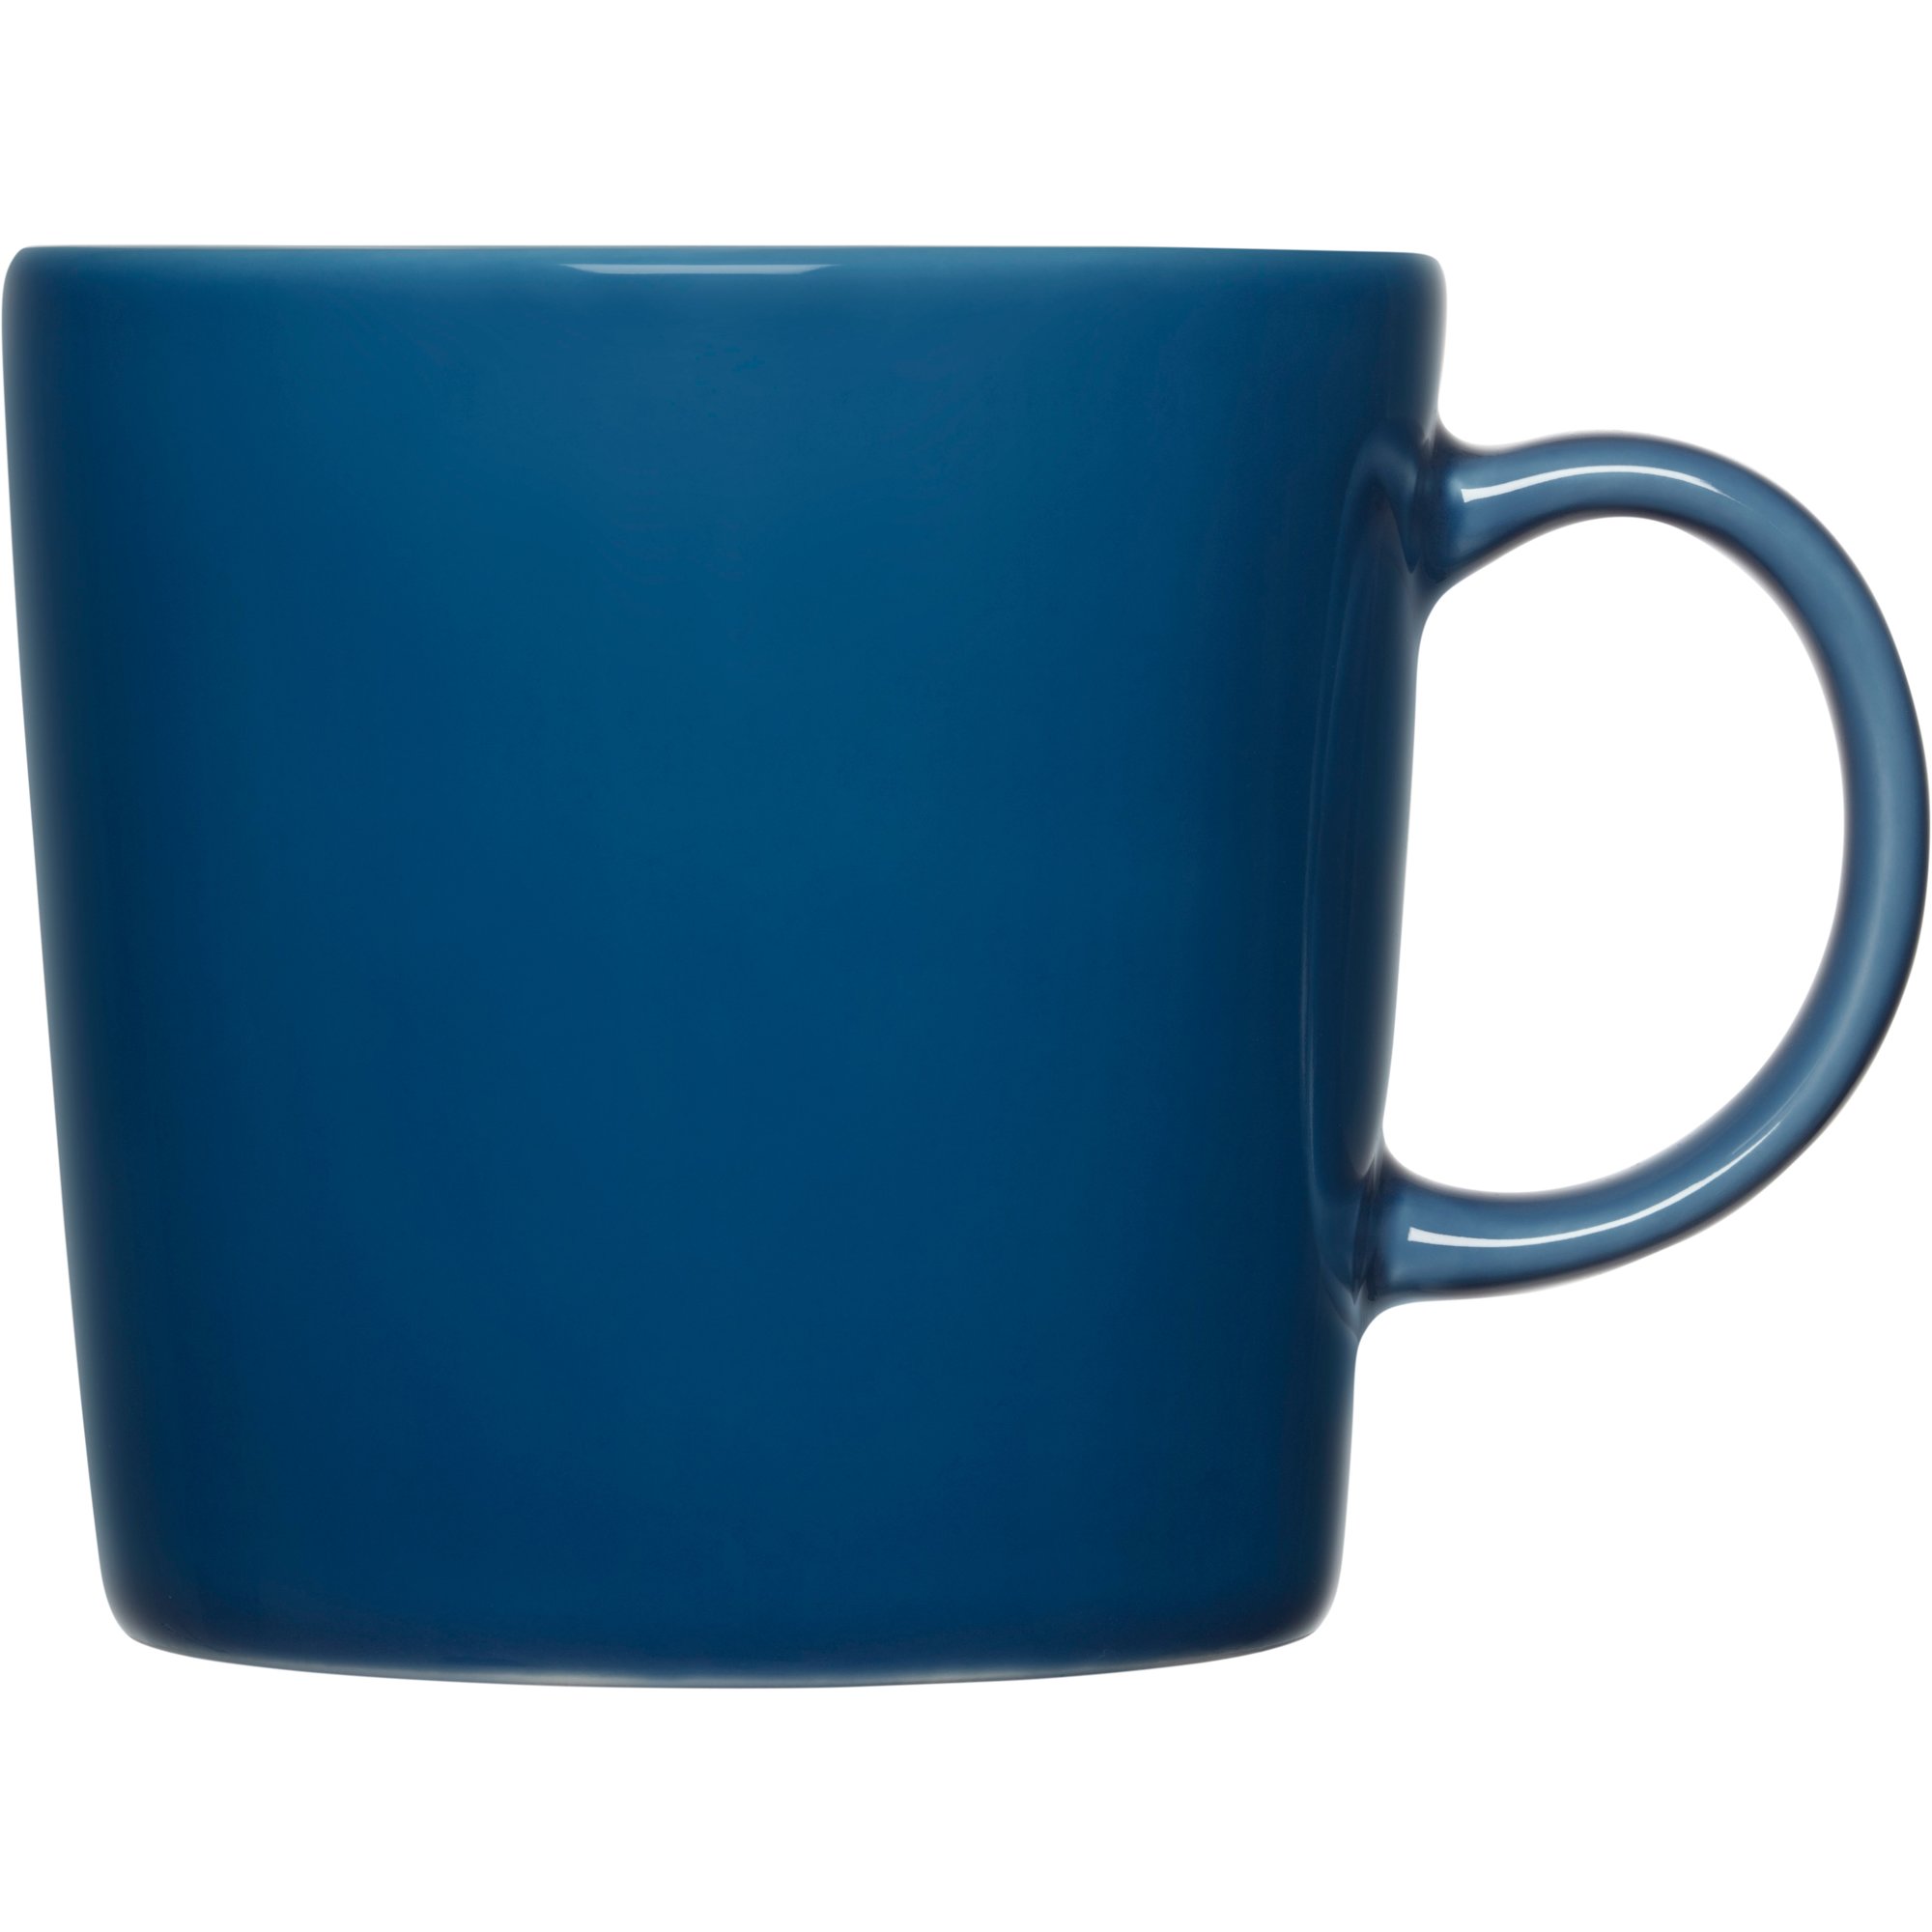 Iittala Teema mugg 0,3 liter vintage blå